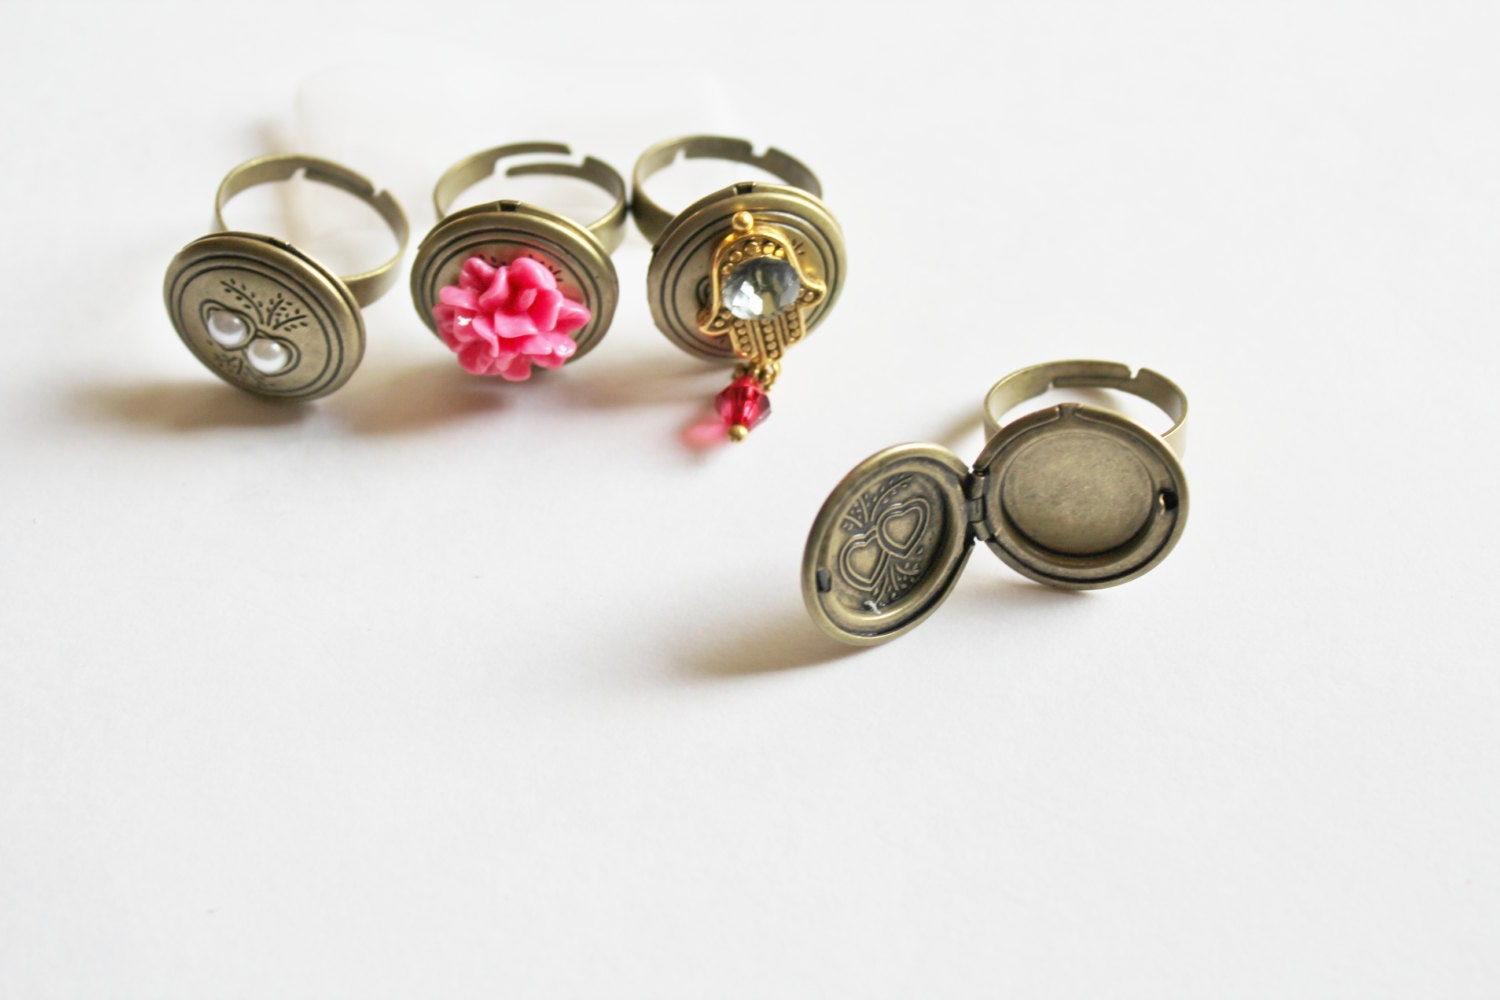 Adjustable ring, Locket ring, picture ring, large ring, Hamsa ring, Antique bronze ring, Vintage ring, Metal ring